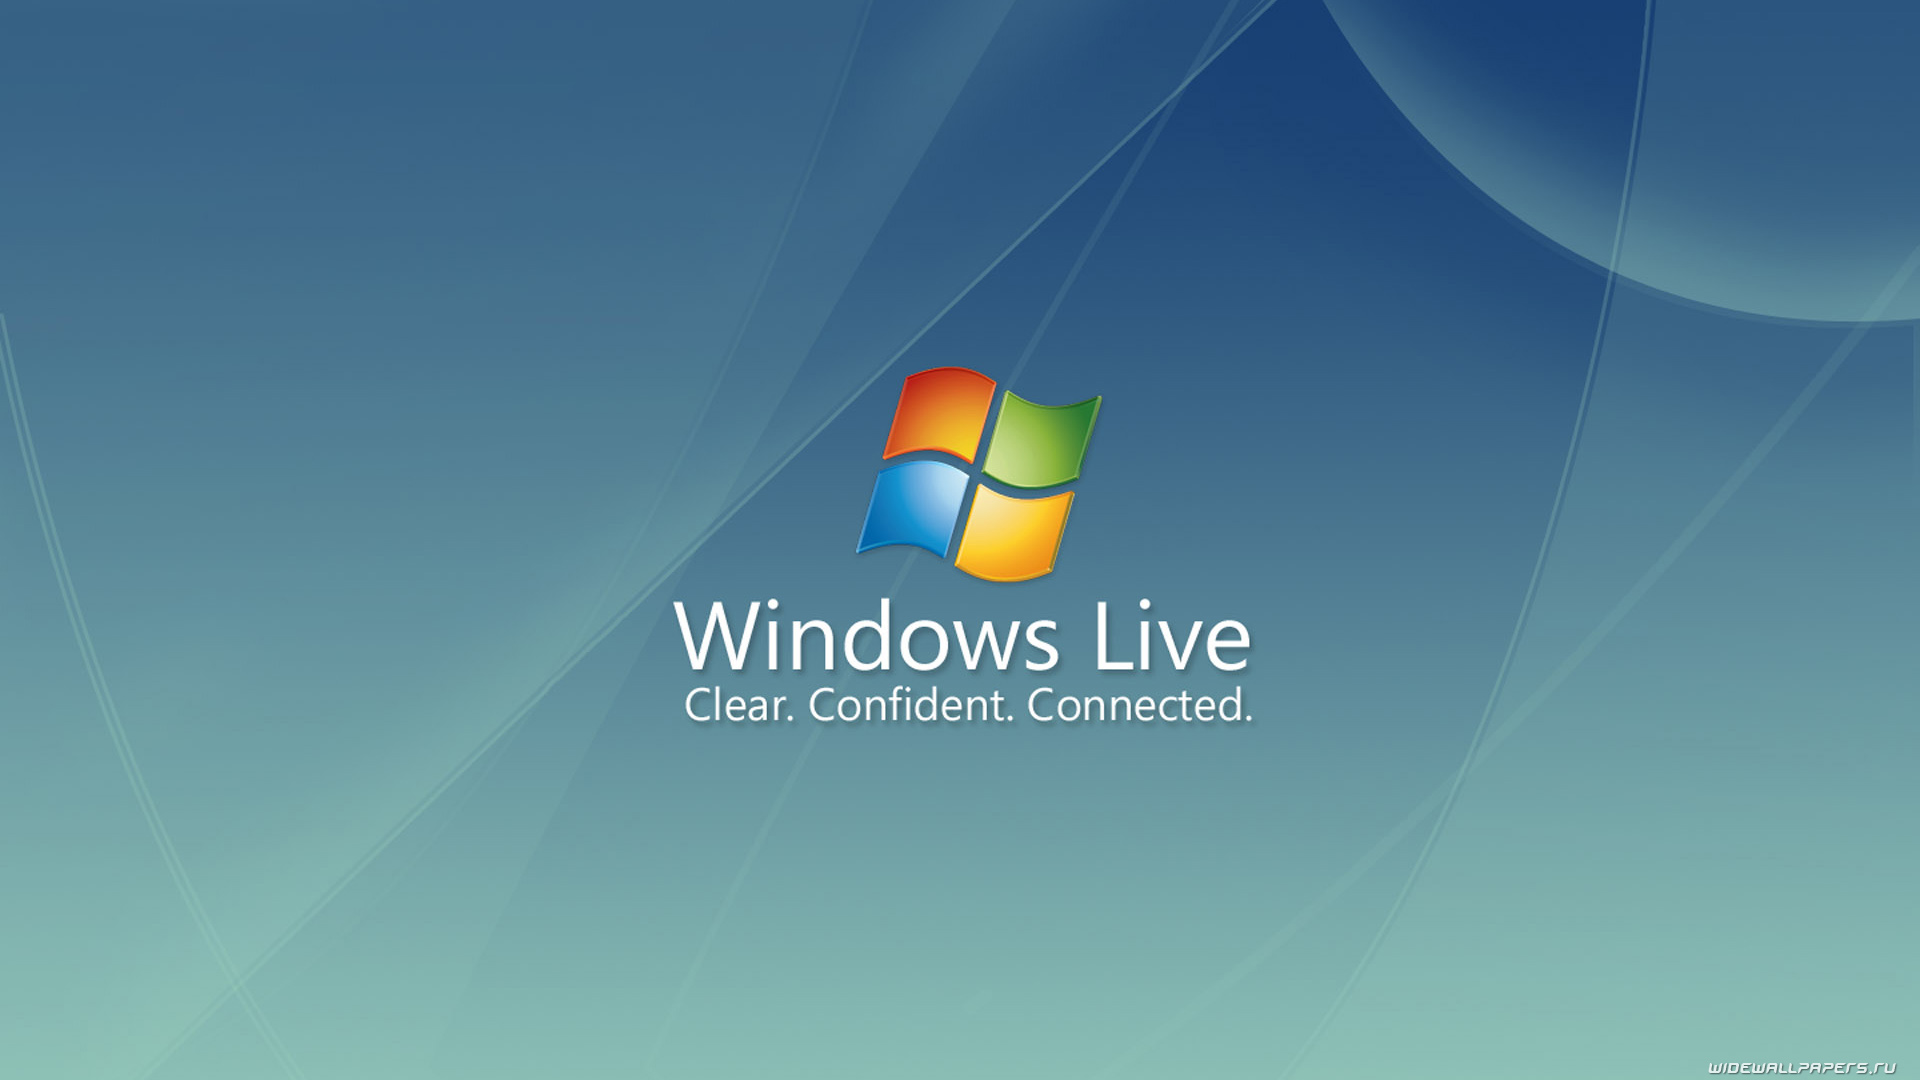 Windows Live Wallpapers HD Wallpaper of Windows   hdwallpaper2013com